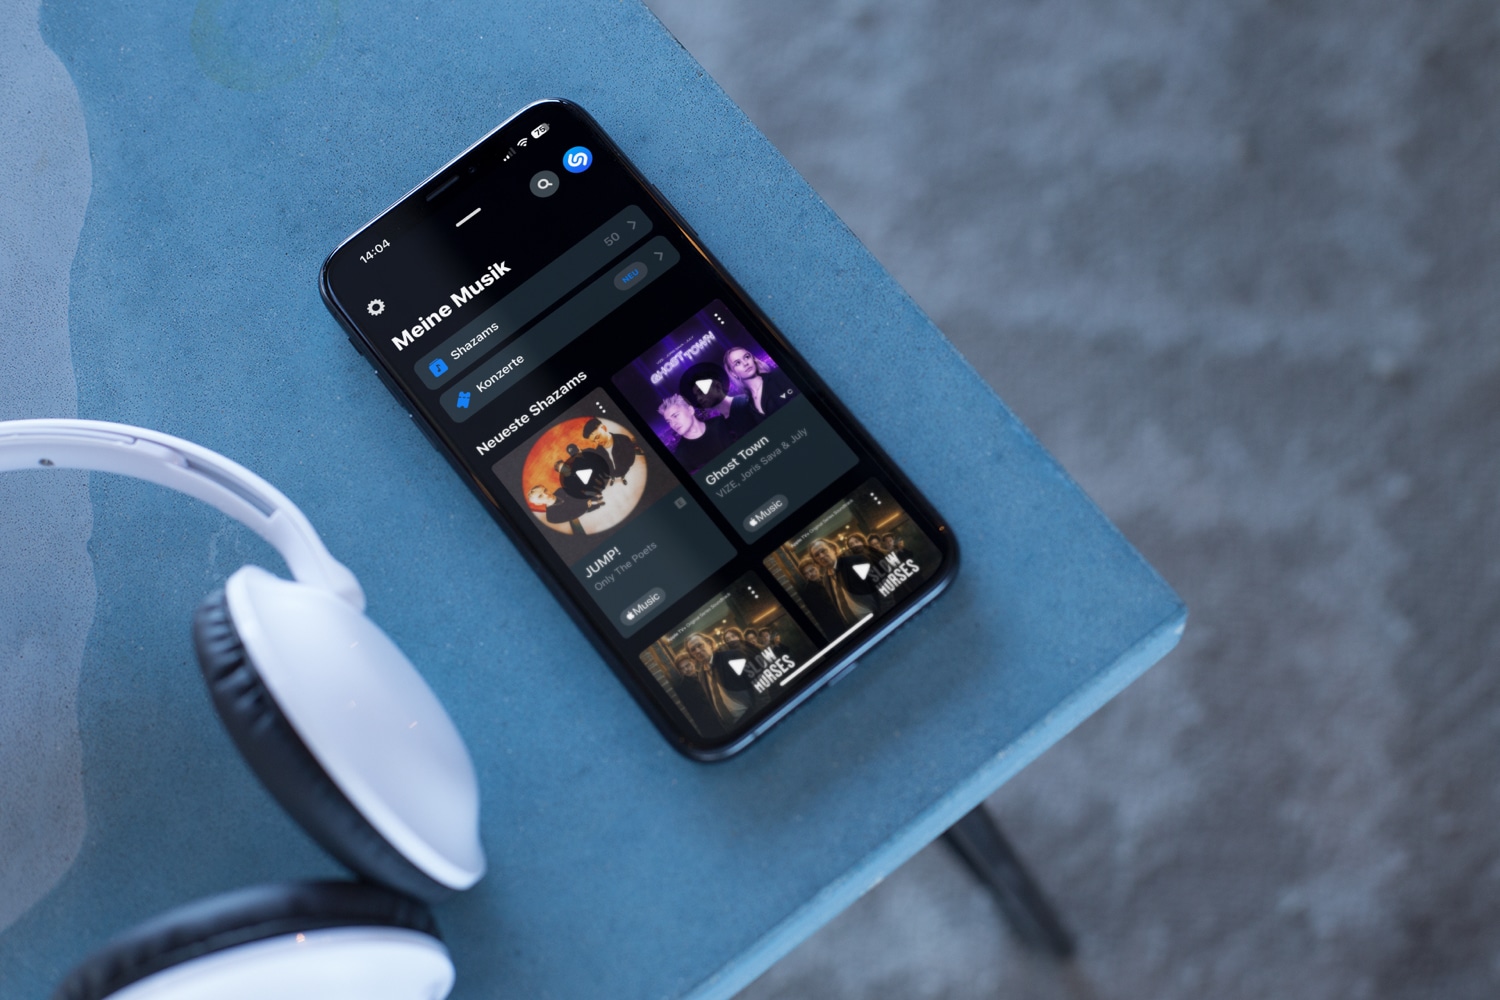 iPhone-Mockup von Shazam mit Kopfhörer auf einem blauen Tisch